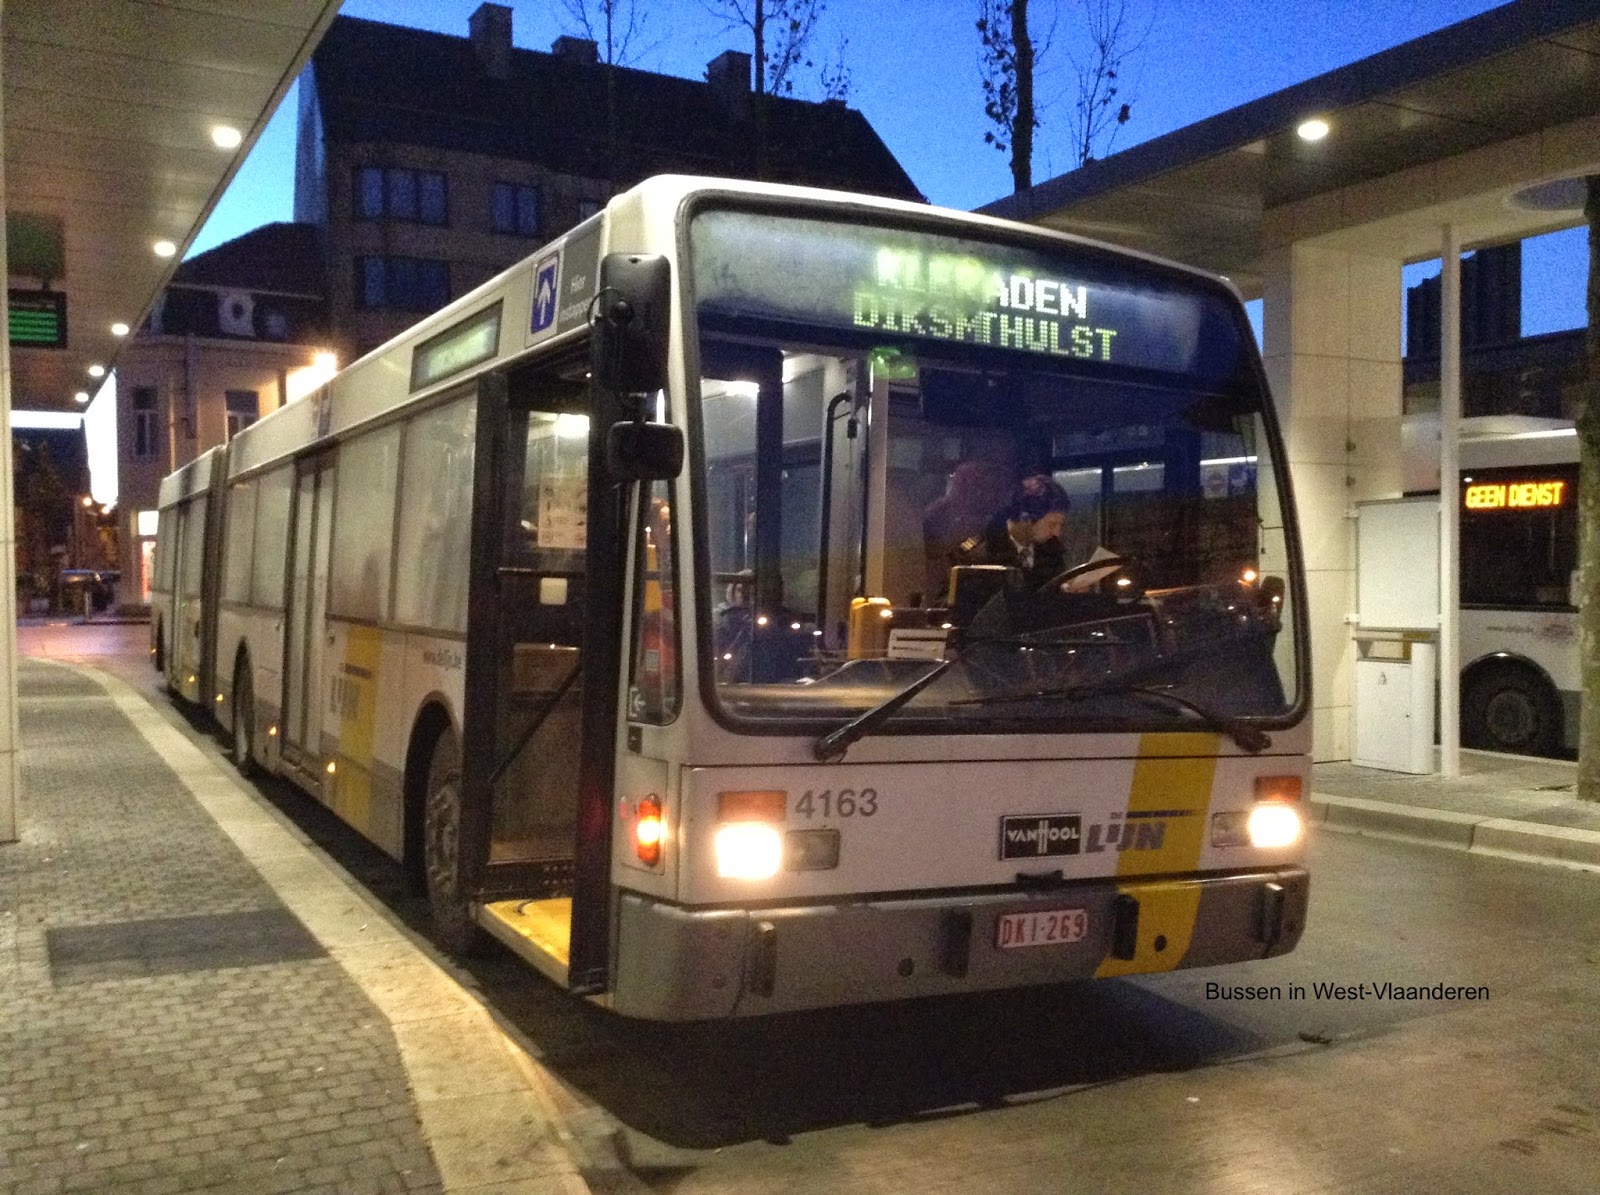 Bussen west vlaanderen: 2014